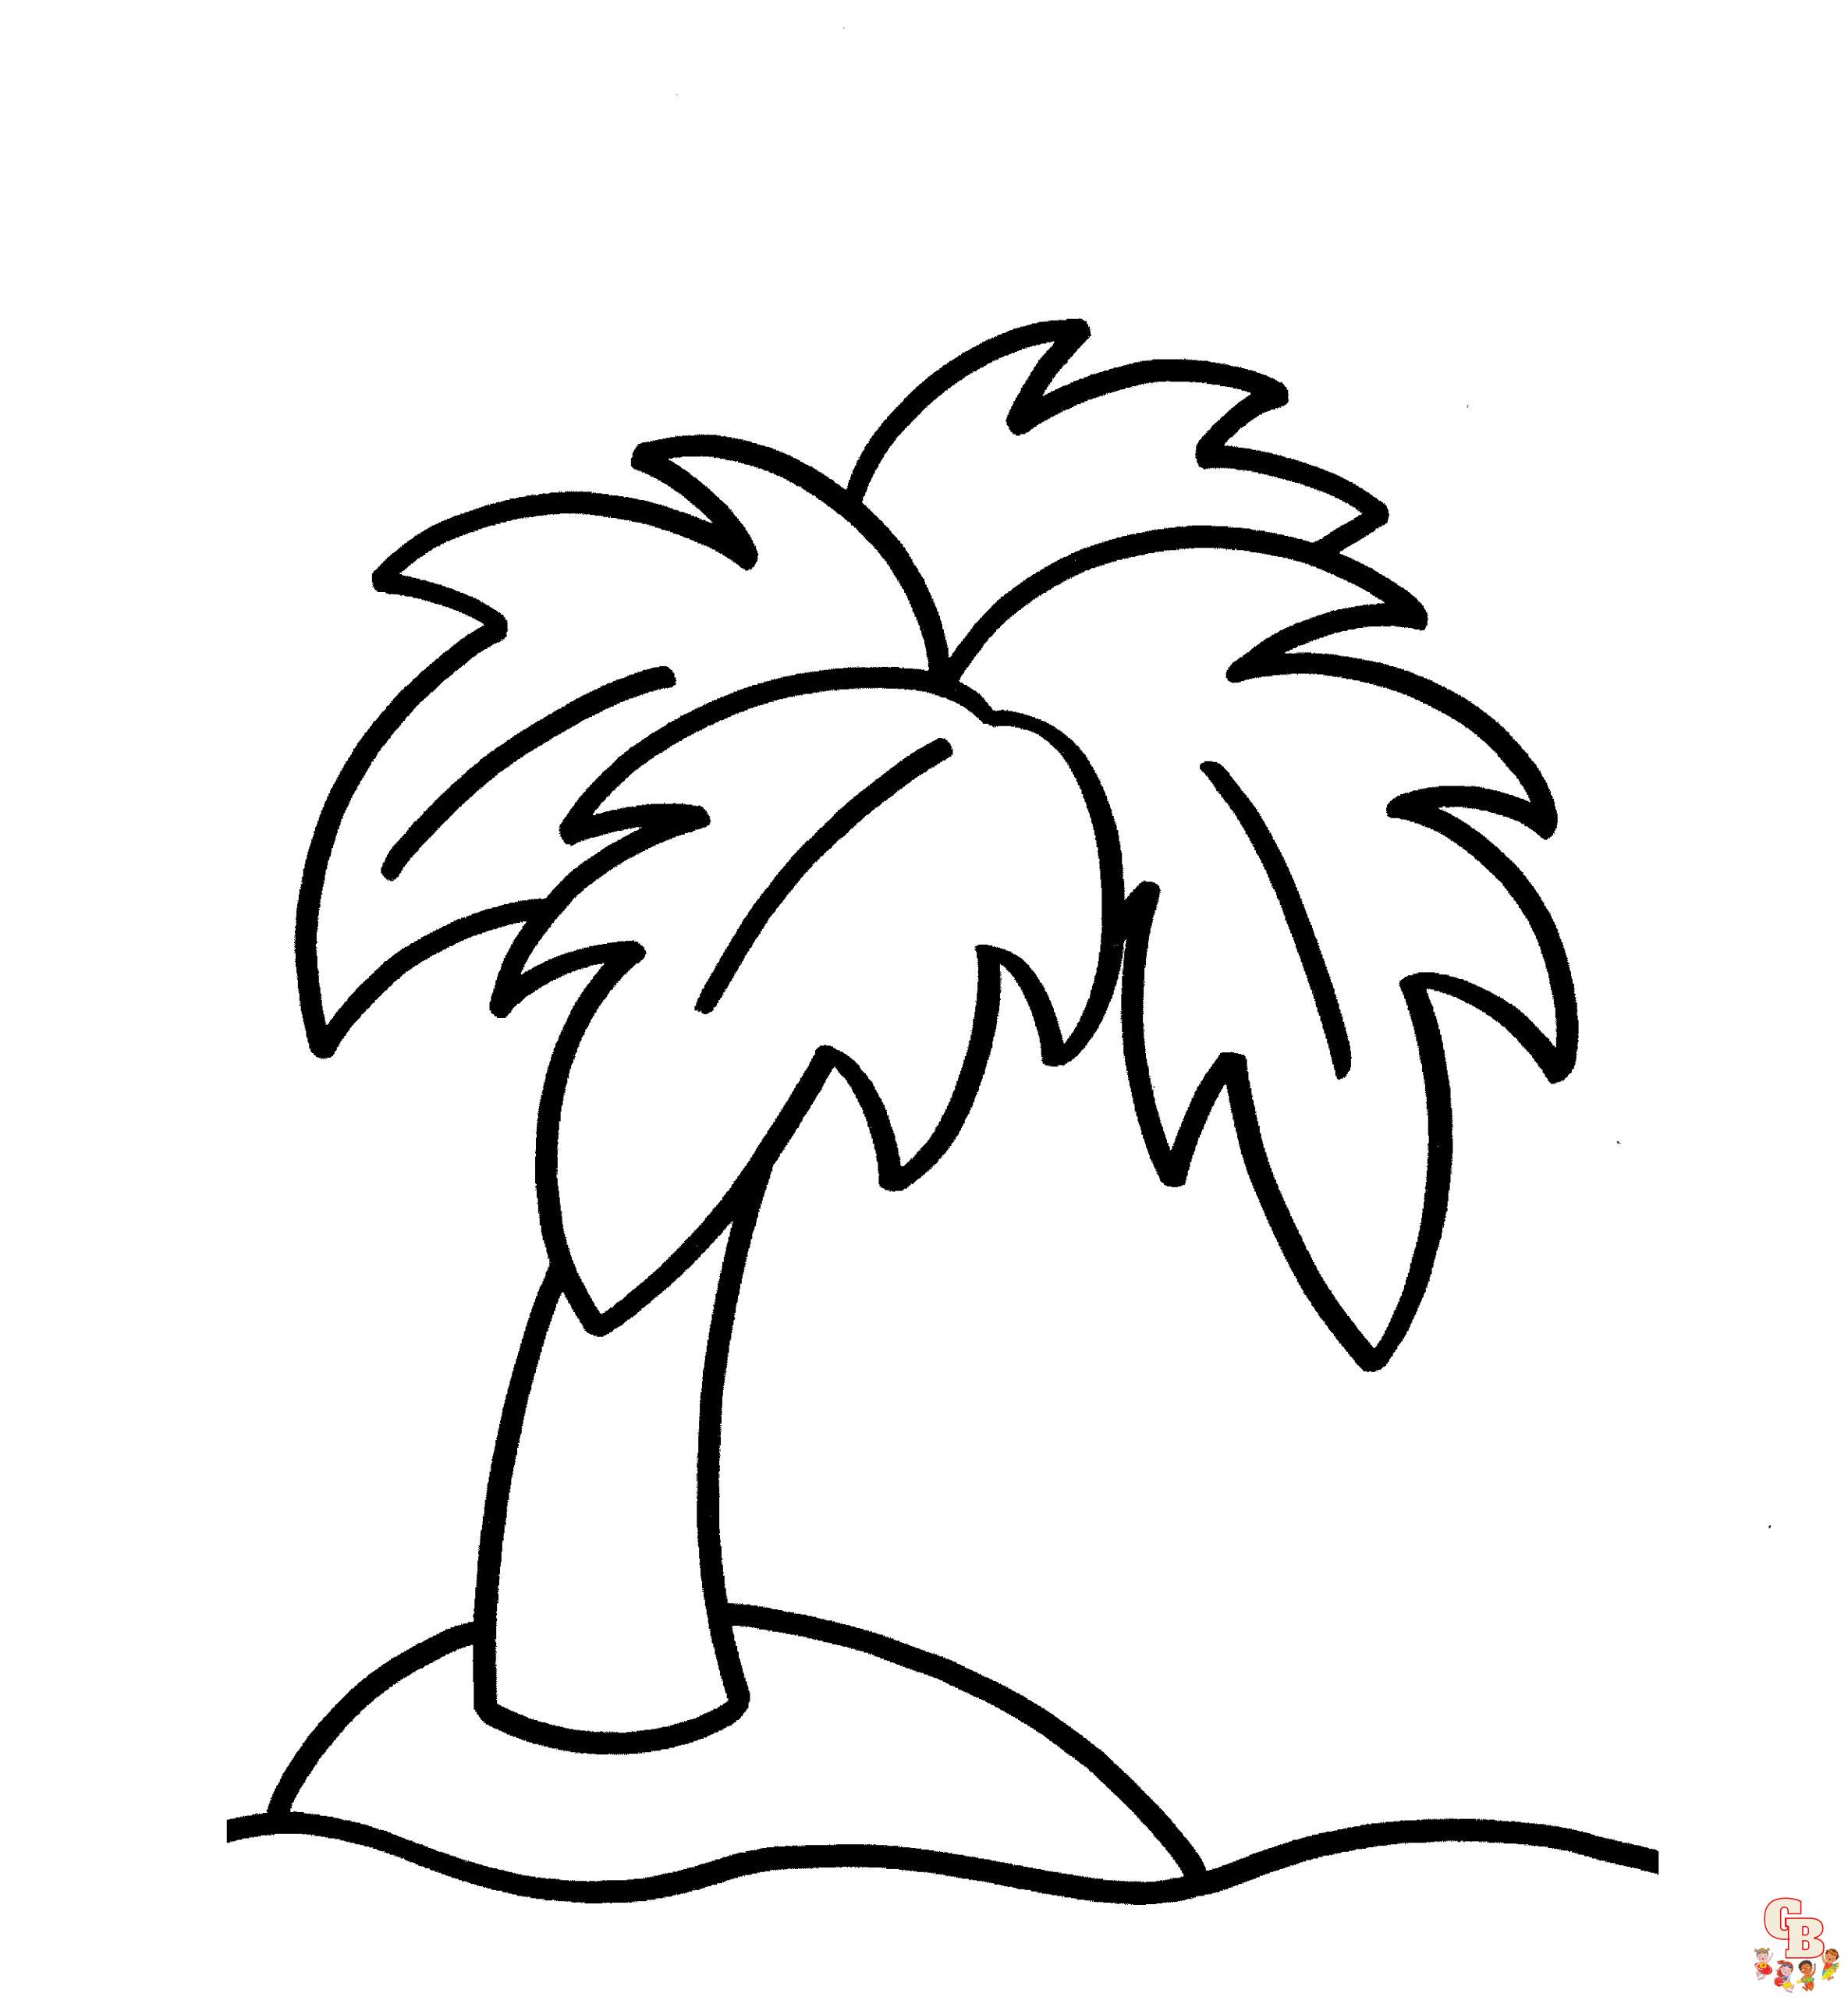 Planșă de colorat palmier